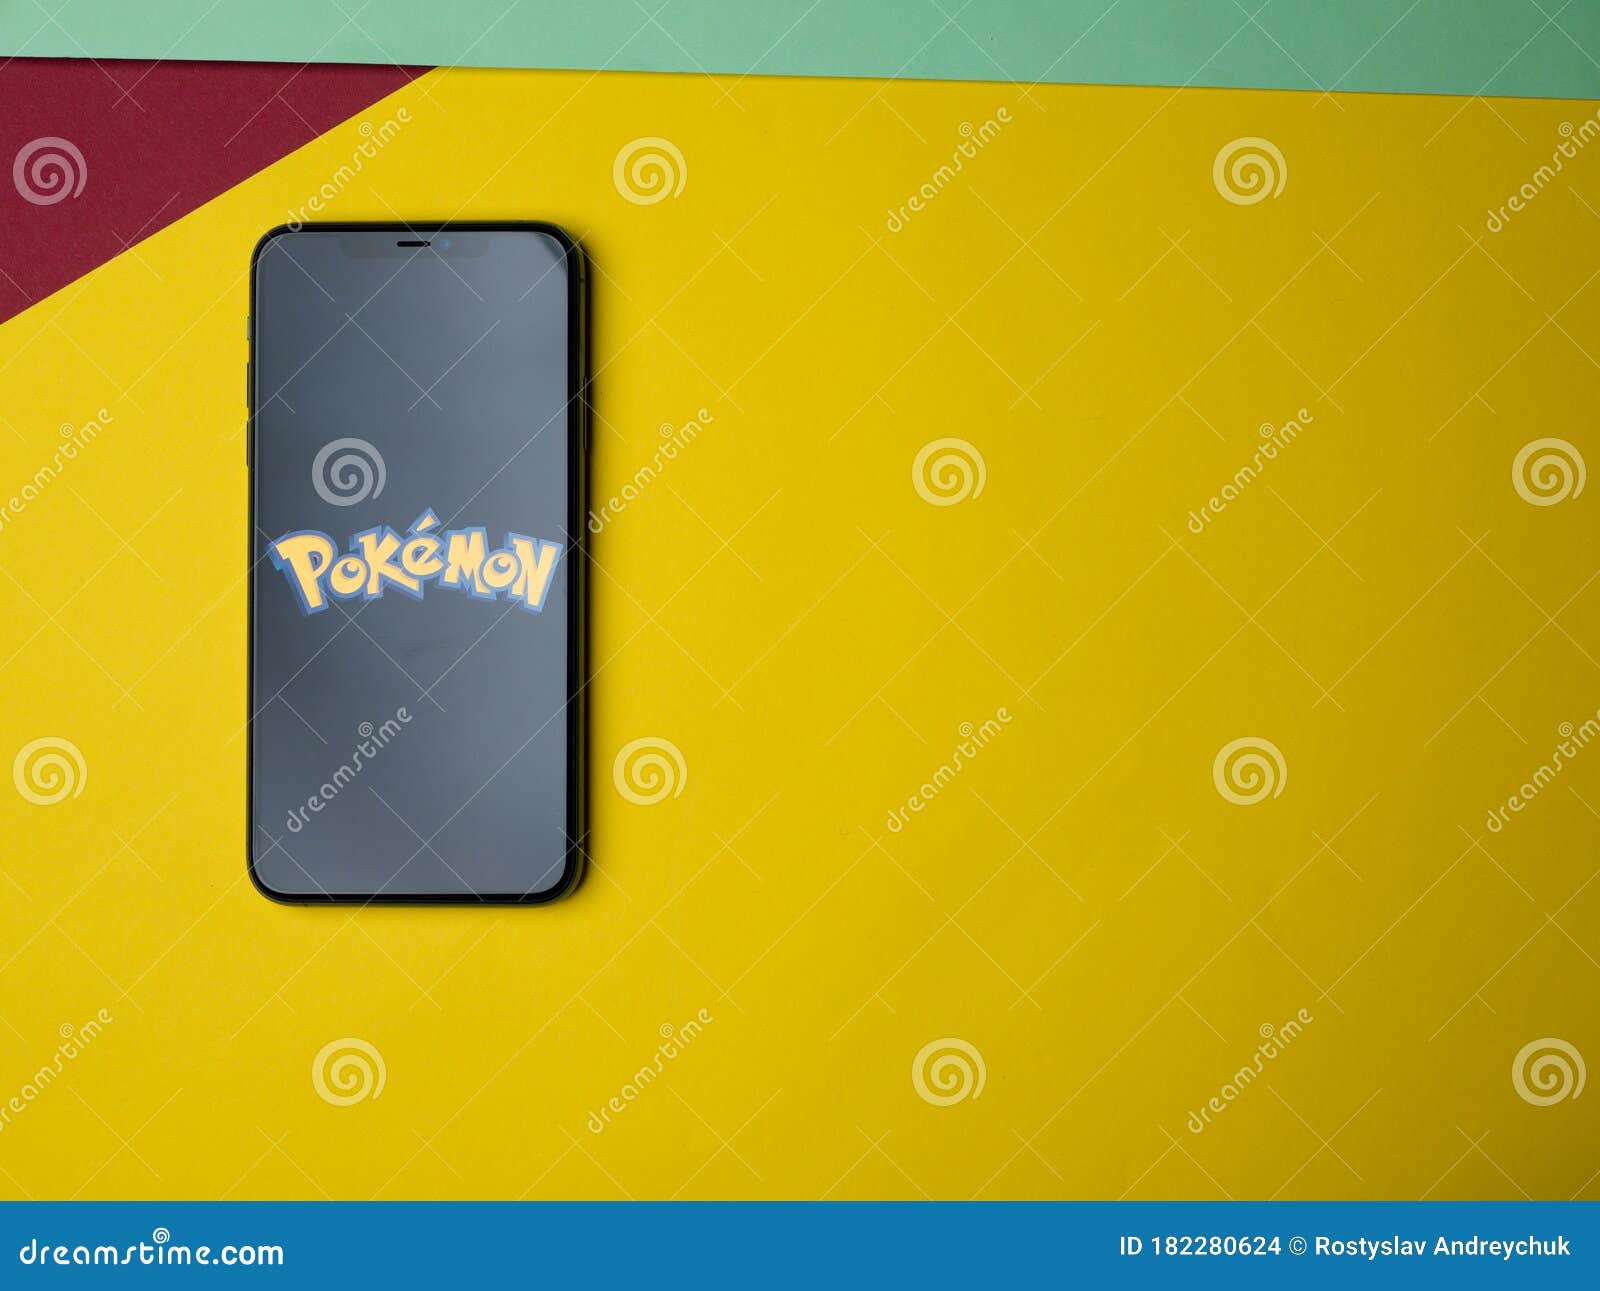 Fotos para tela de fundo (Pokémon)#for